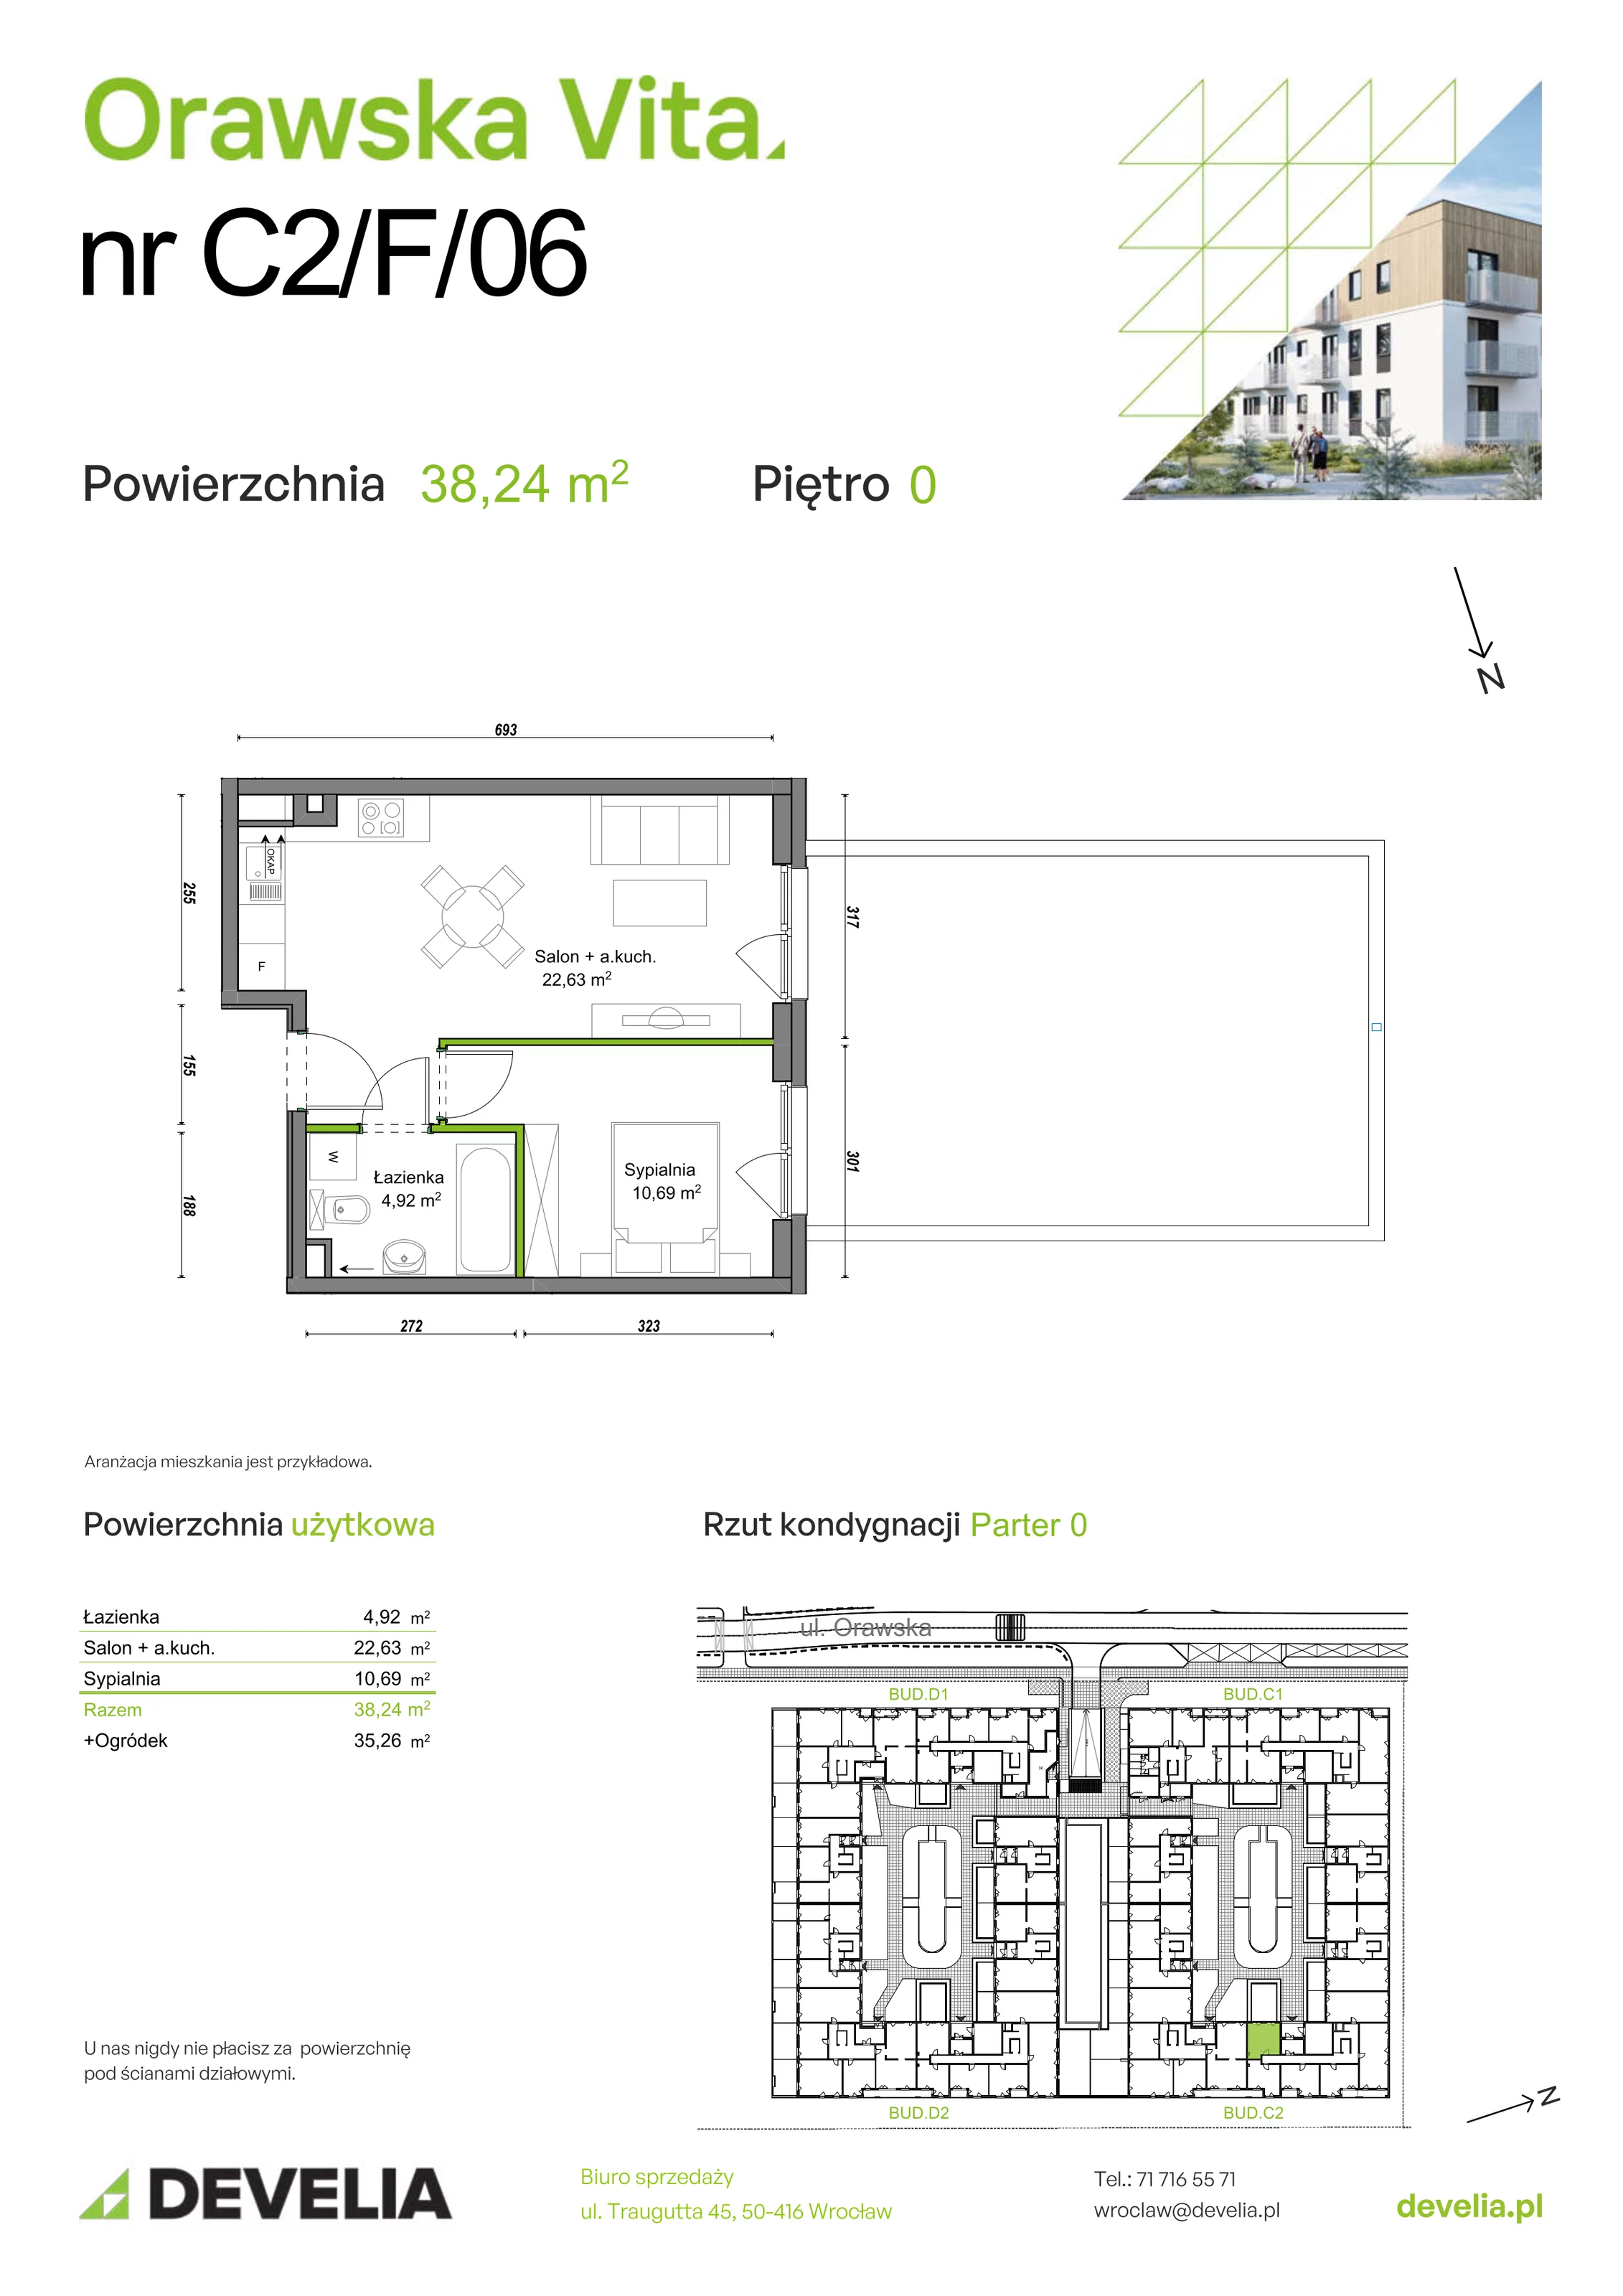 Mieszkanie 38,24 m², parter, oferta nr C2/F/06, Orawska Vita, Wrocław, Ołtaszyn, Krzyki, ul. Orawska 73